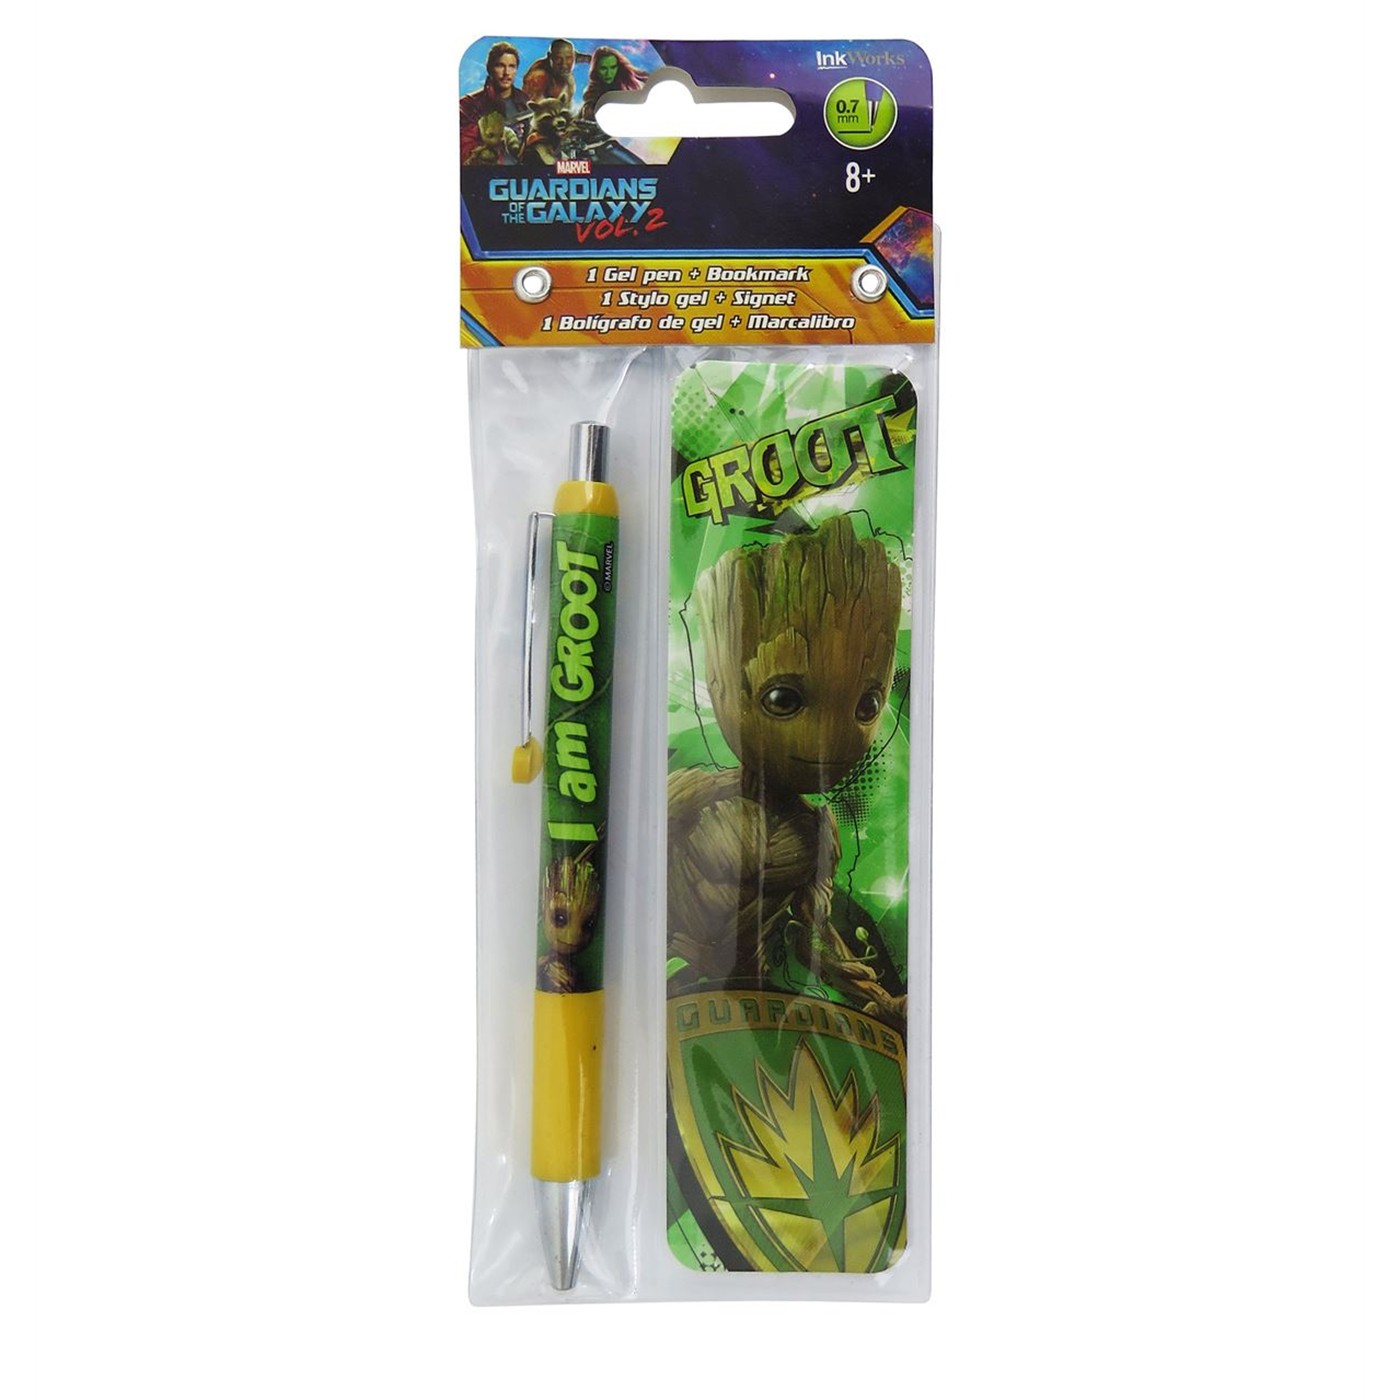 GOTG Vol. 2 Groot Pen and Bookmark Set